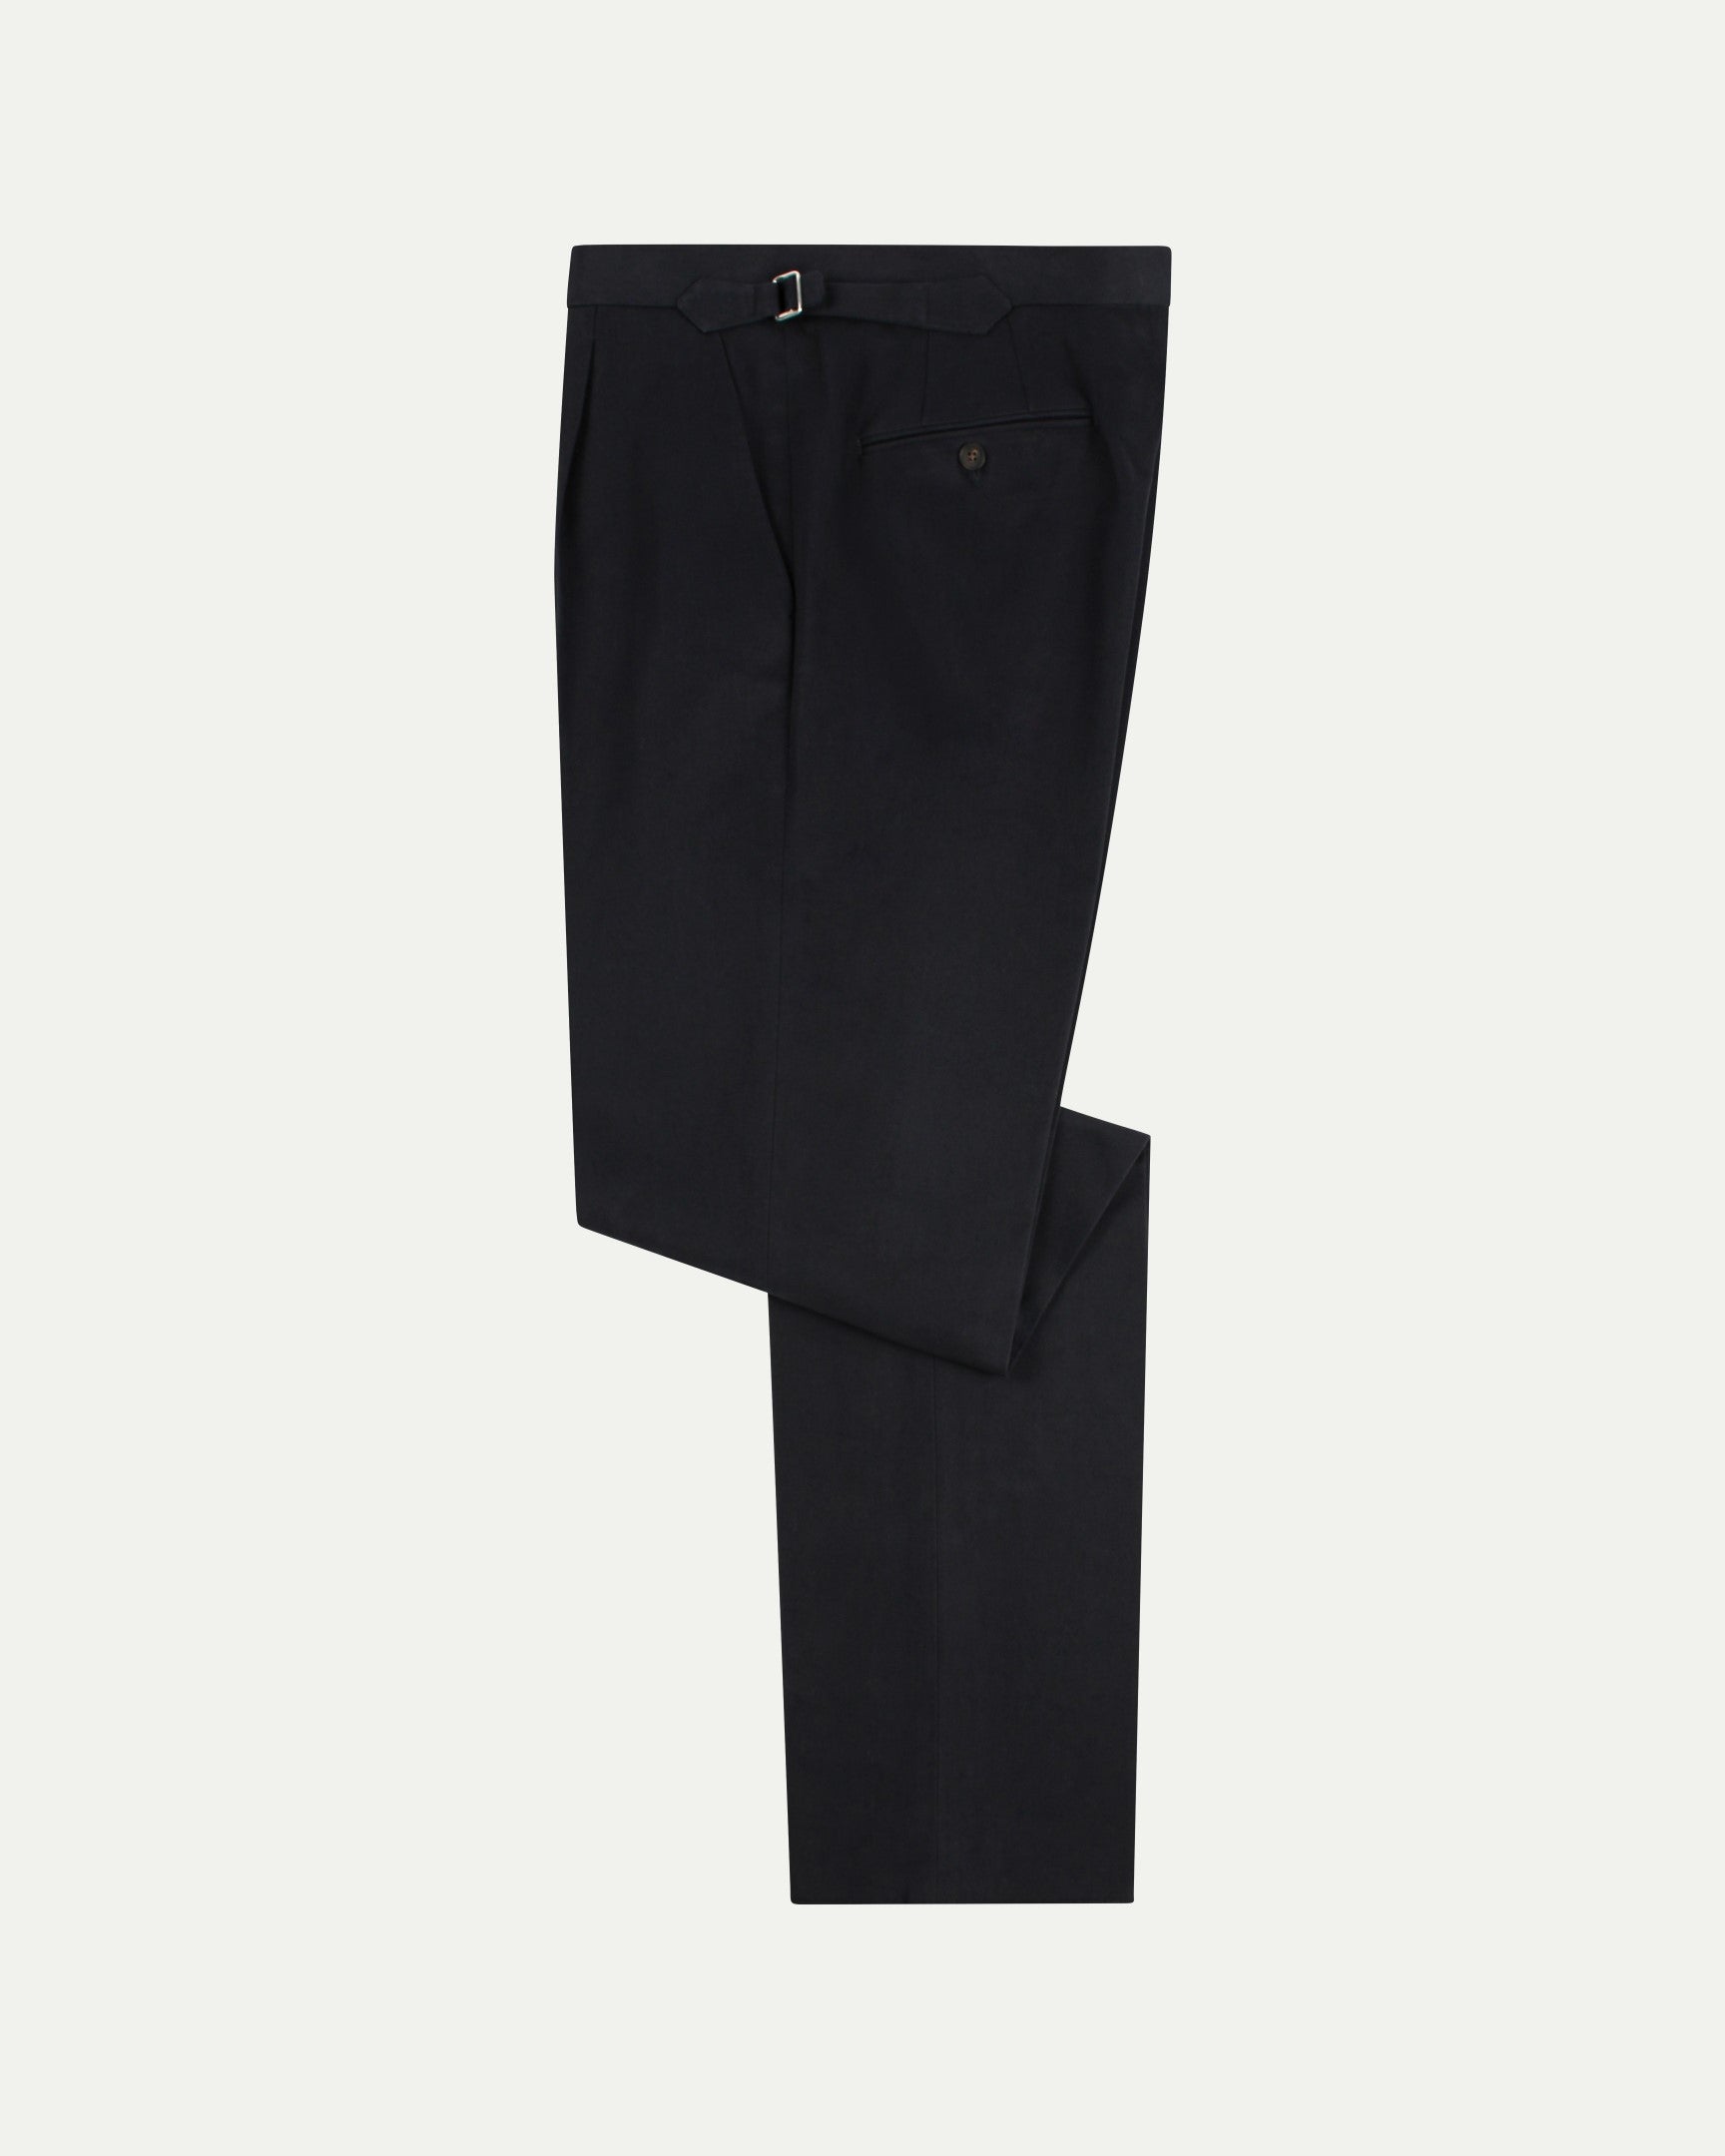 Single Pleat Cotton & Silk Pants - Umit benan